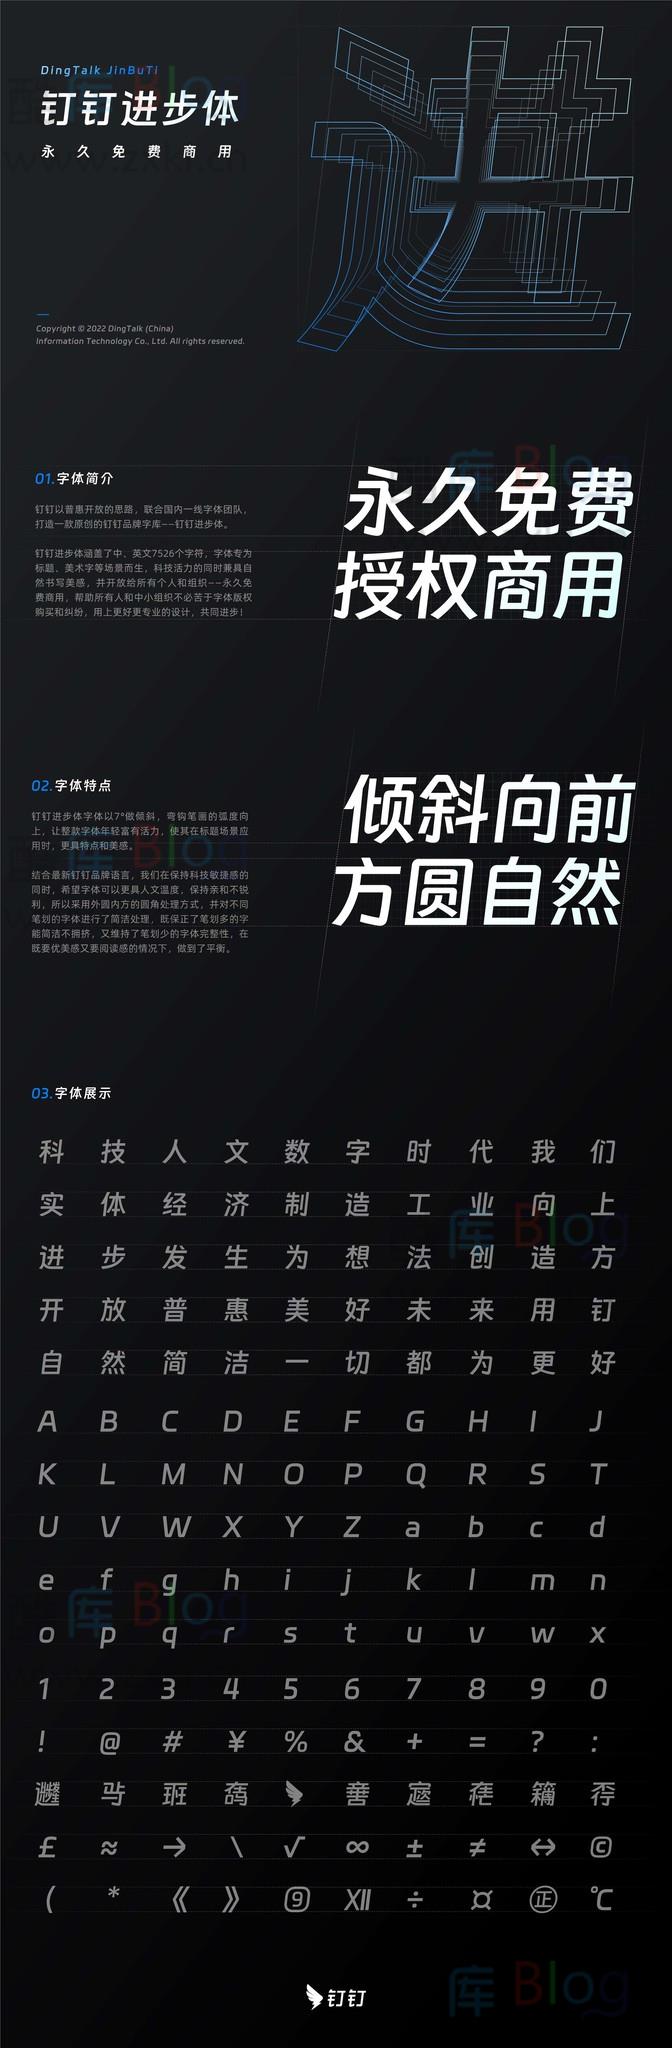 永久免费商用字体:「钉钉进步体」DingTalk JinBuTi下载 第3张插图